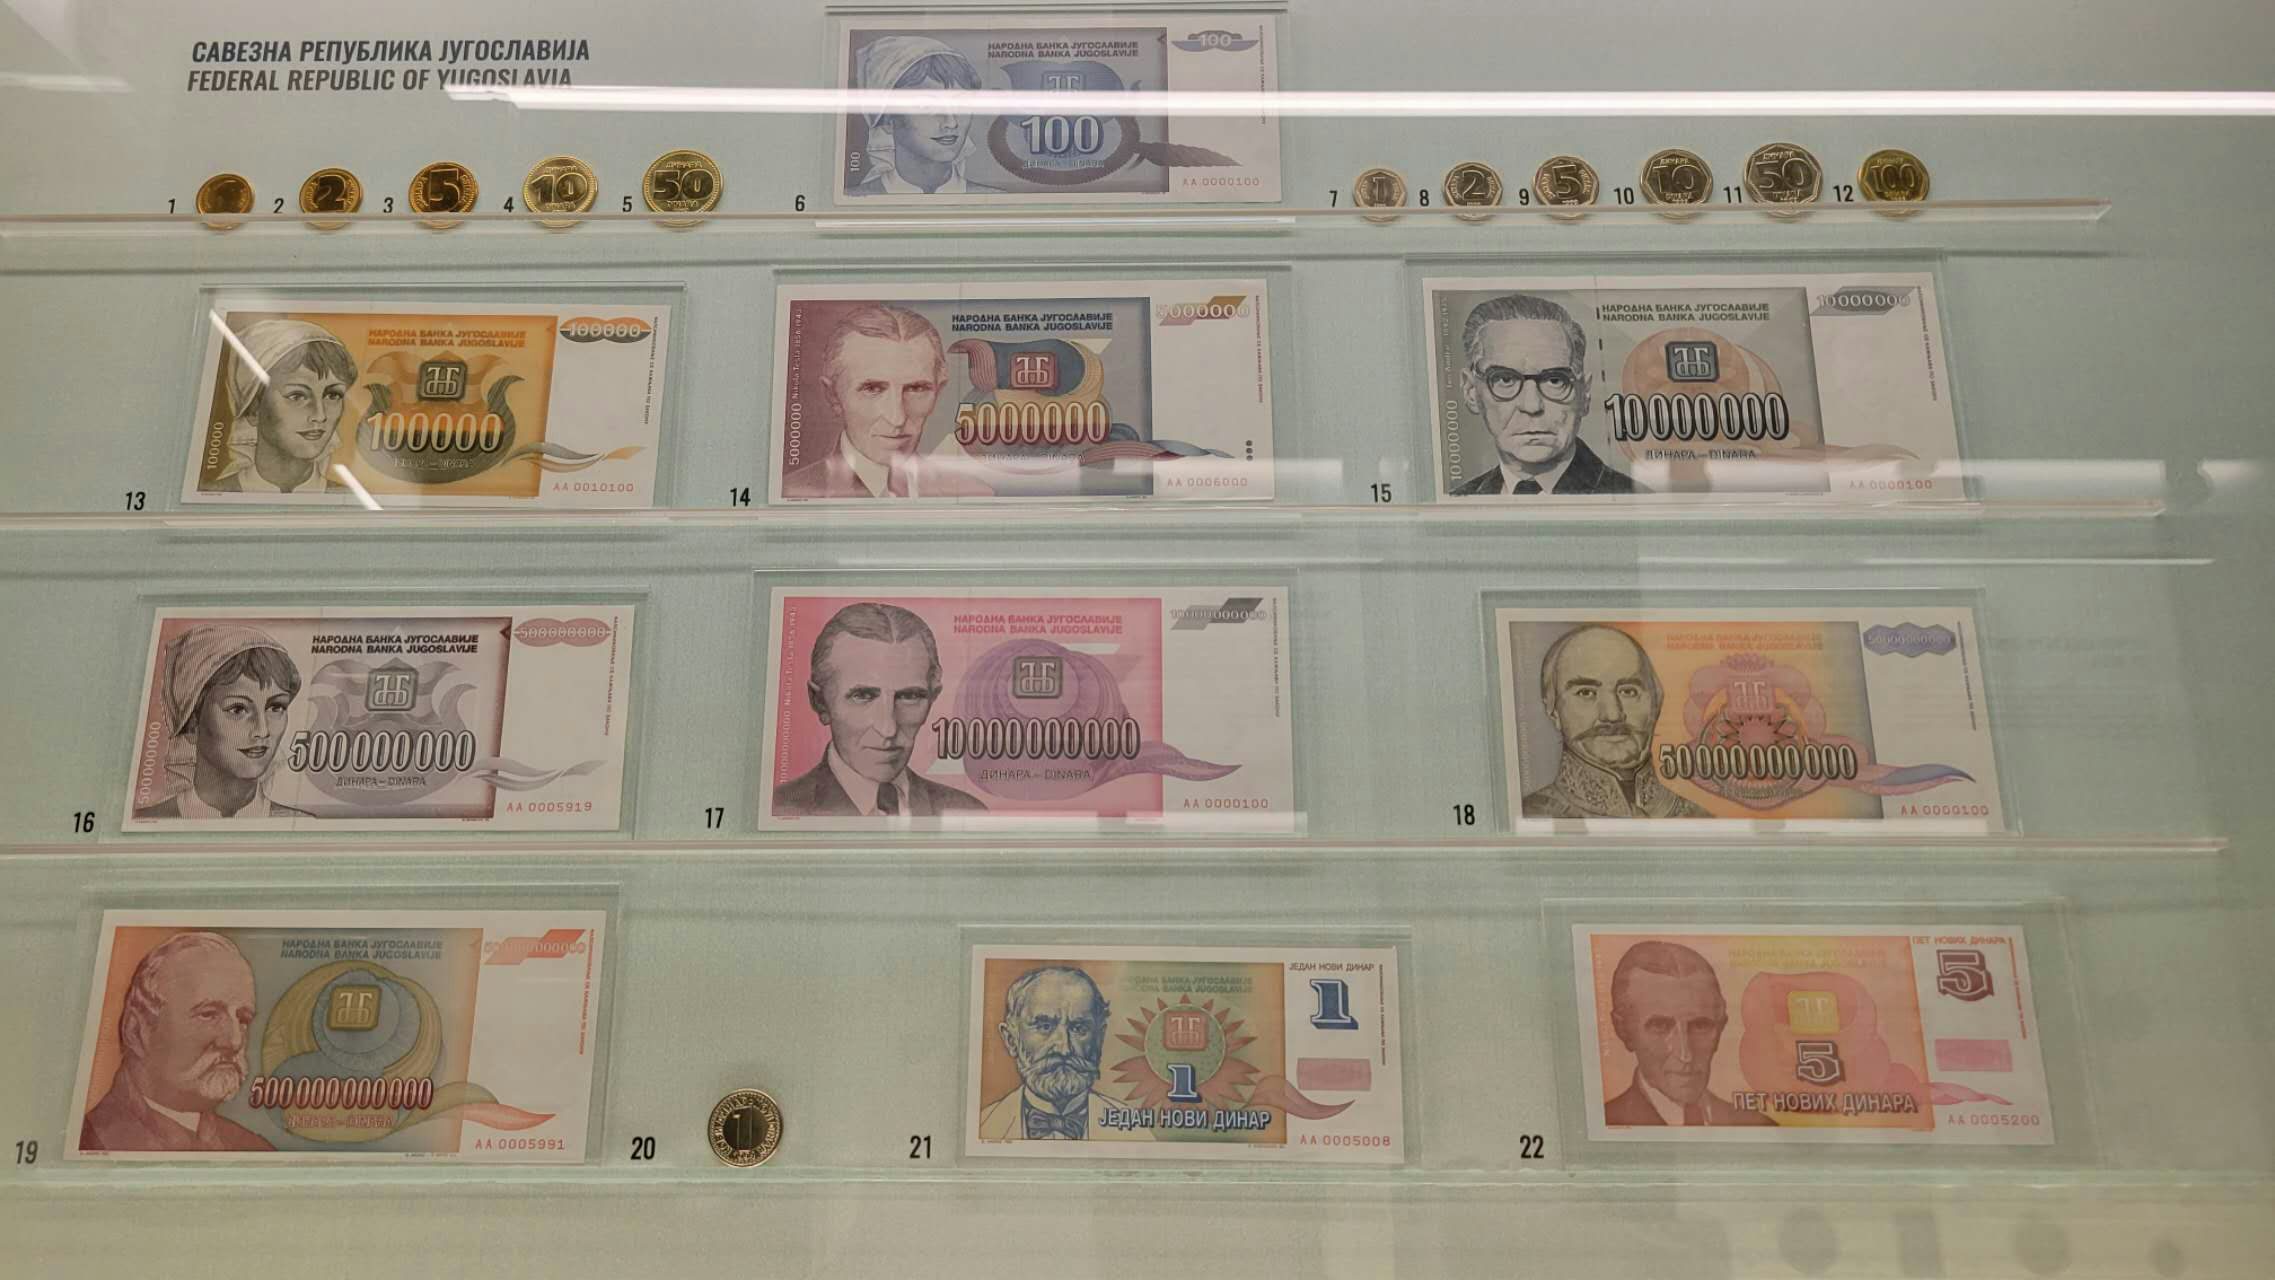 博物馆货币区，南斯拉夫曾经最严重的通货膨胀